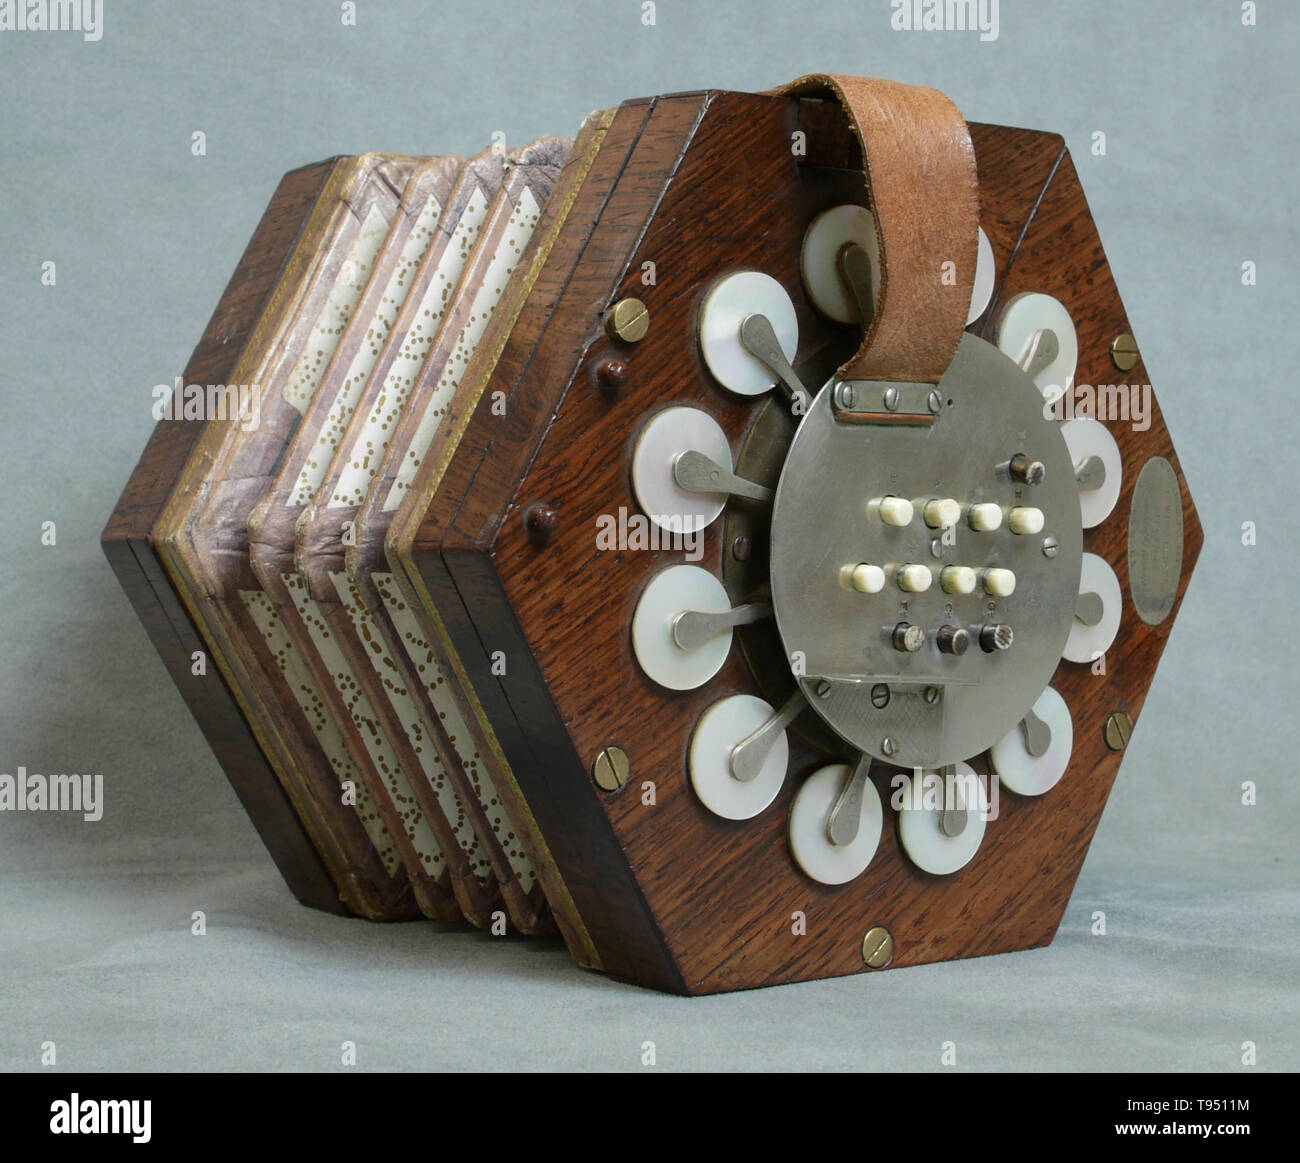 Un soffietto realizzato da Charles Wheatstone (1802-1875) a Londra in Inghilterra tra il 1831 e il 1837. La concertina stata inventata in Inghilterra e in Germania, probabilmente in modo indipendente. La versione in inglese è stato inventato nel 1829 da Sir Charles Wheatstone, mentre Carl Friedrich Uhlig ha annunciato la versione in tedesco di cinque anni più tardi, nel 1834. A parte la concertina, Charles Wheatstone inventato stereoscopio (un dispositivo per la visualizzazione di immagini tridimensionali), e il Playfair cipher (una tecnica di crittografia). Foto Stock